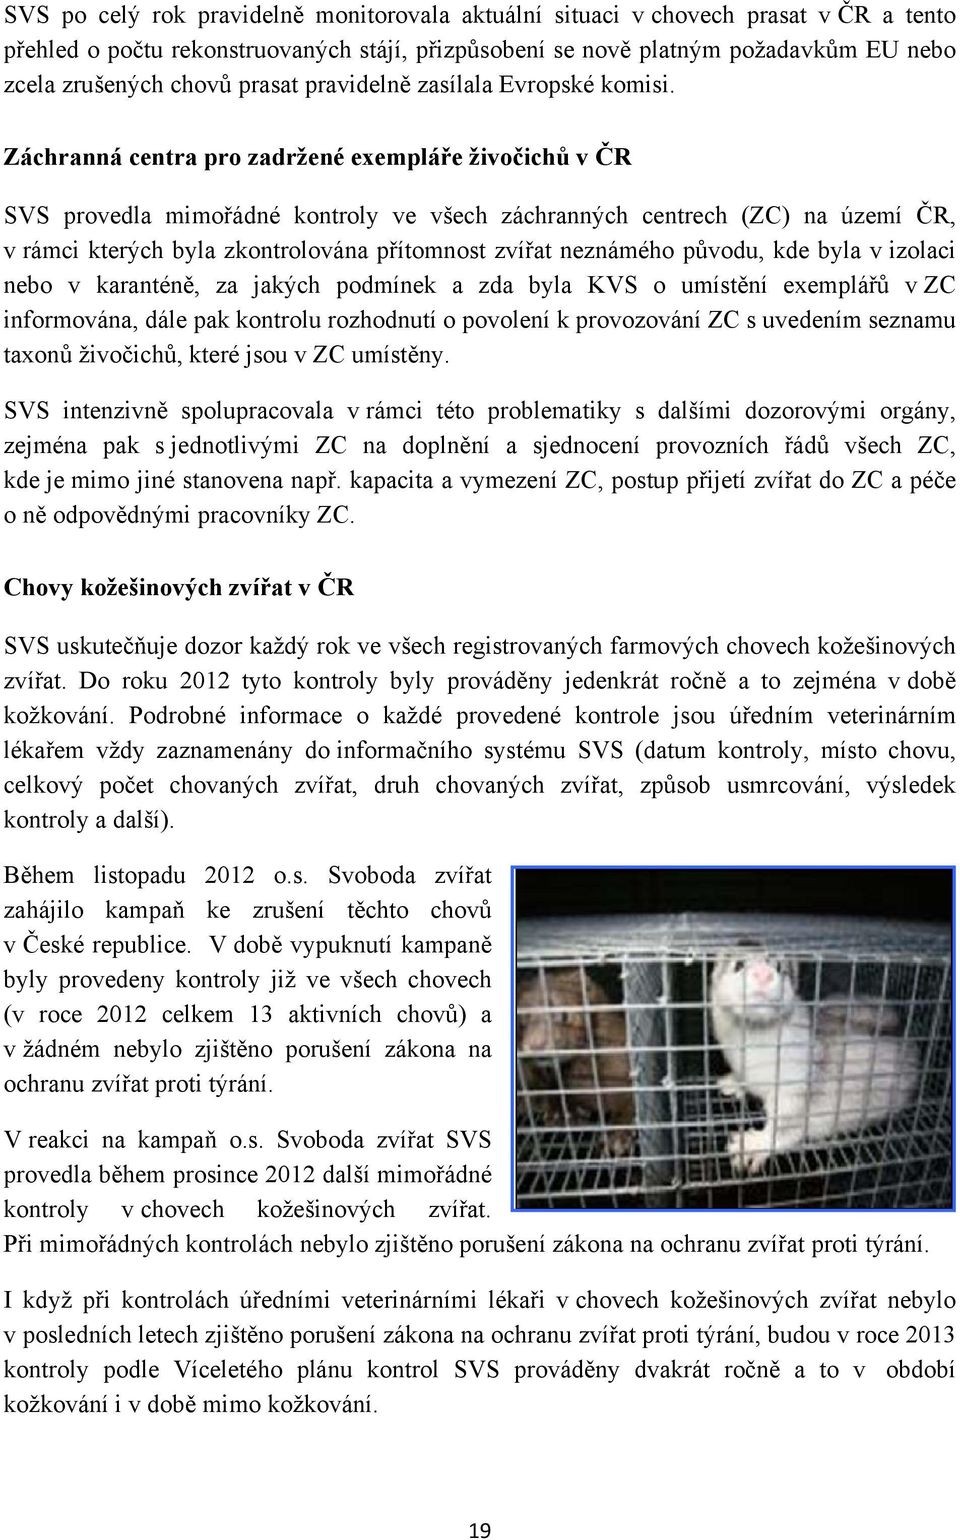 Záchranná centra pro zadržené exempláře živočichů v ČR SVS provedla mimořádné kontroly ve všech záchranných centrech (ZC) na území ČR, v rámci kterých byla zkontrolována přítomnost zvířat neznámého